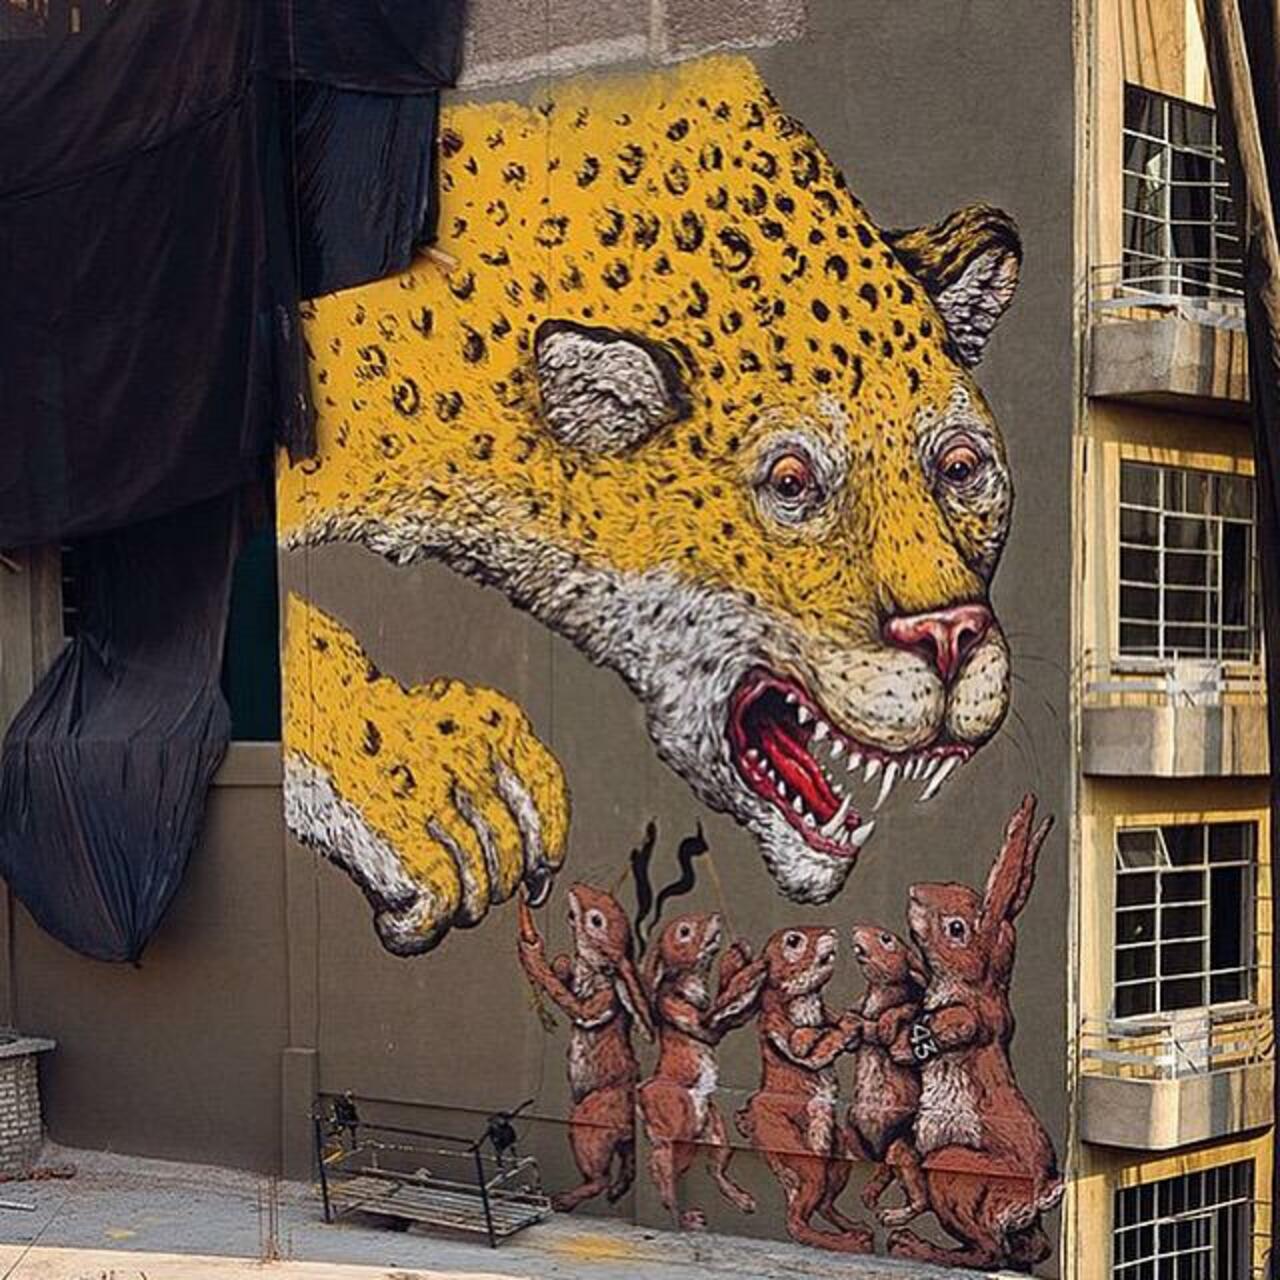 Otro #mural se #Ericailcane para #ManifestoMX en las calles del #DF #streetart #urbanart #graffiti http://t.co/0siKh40jzH